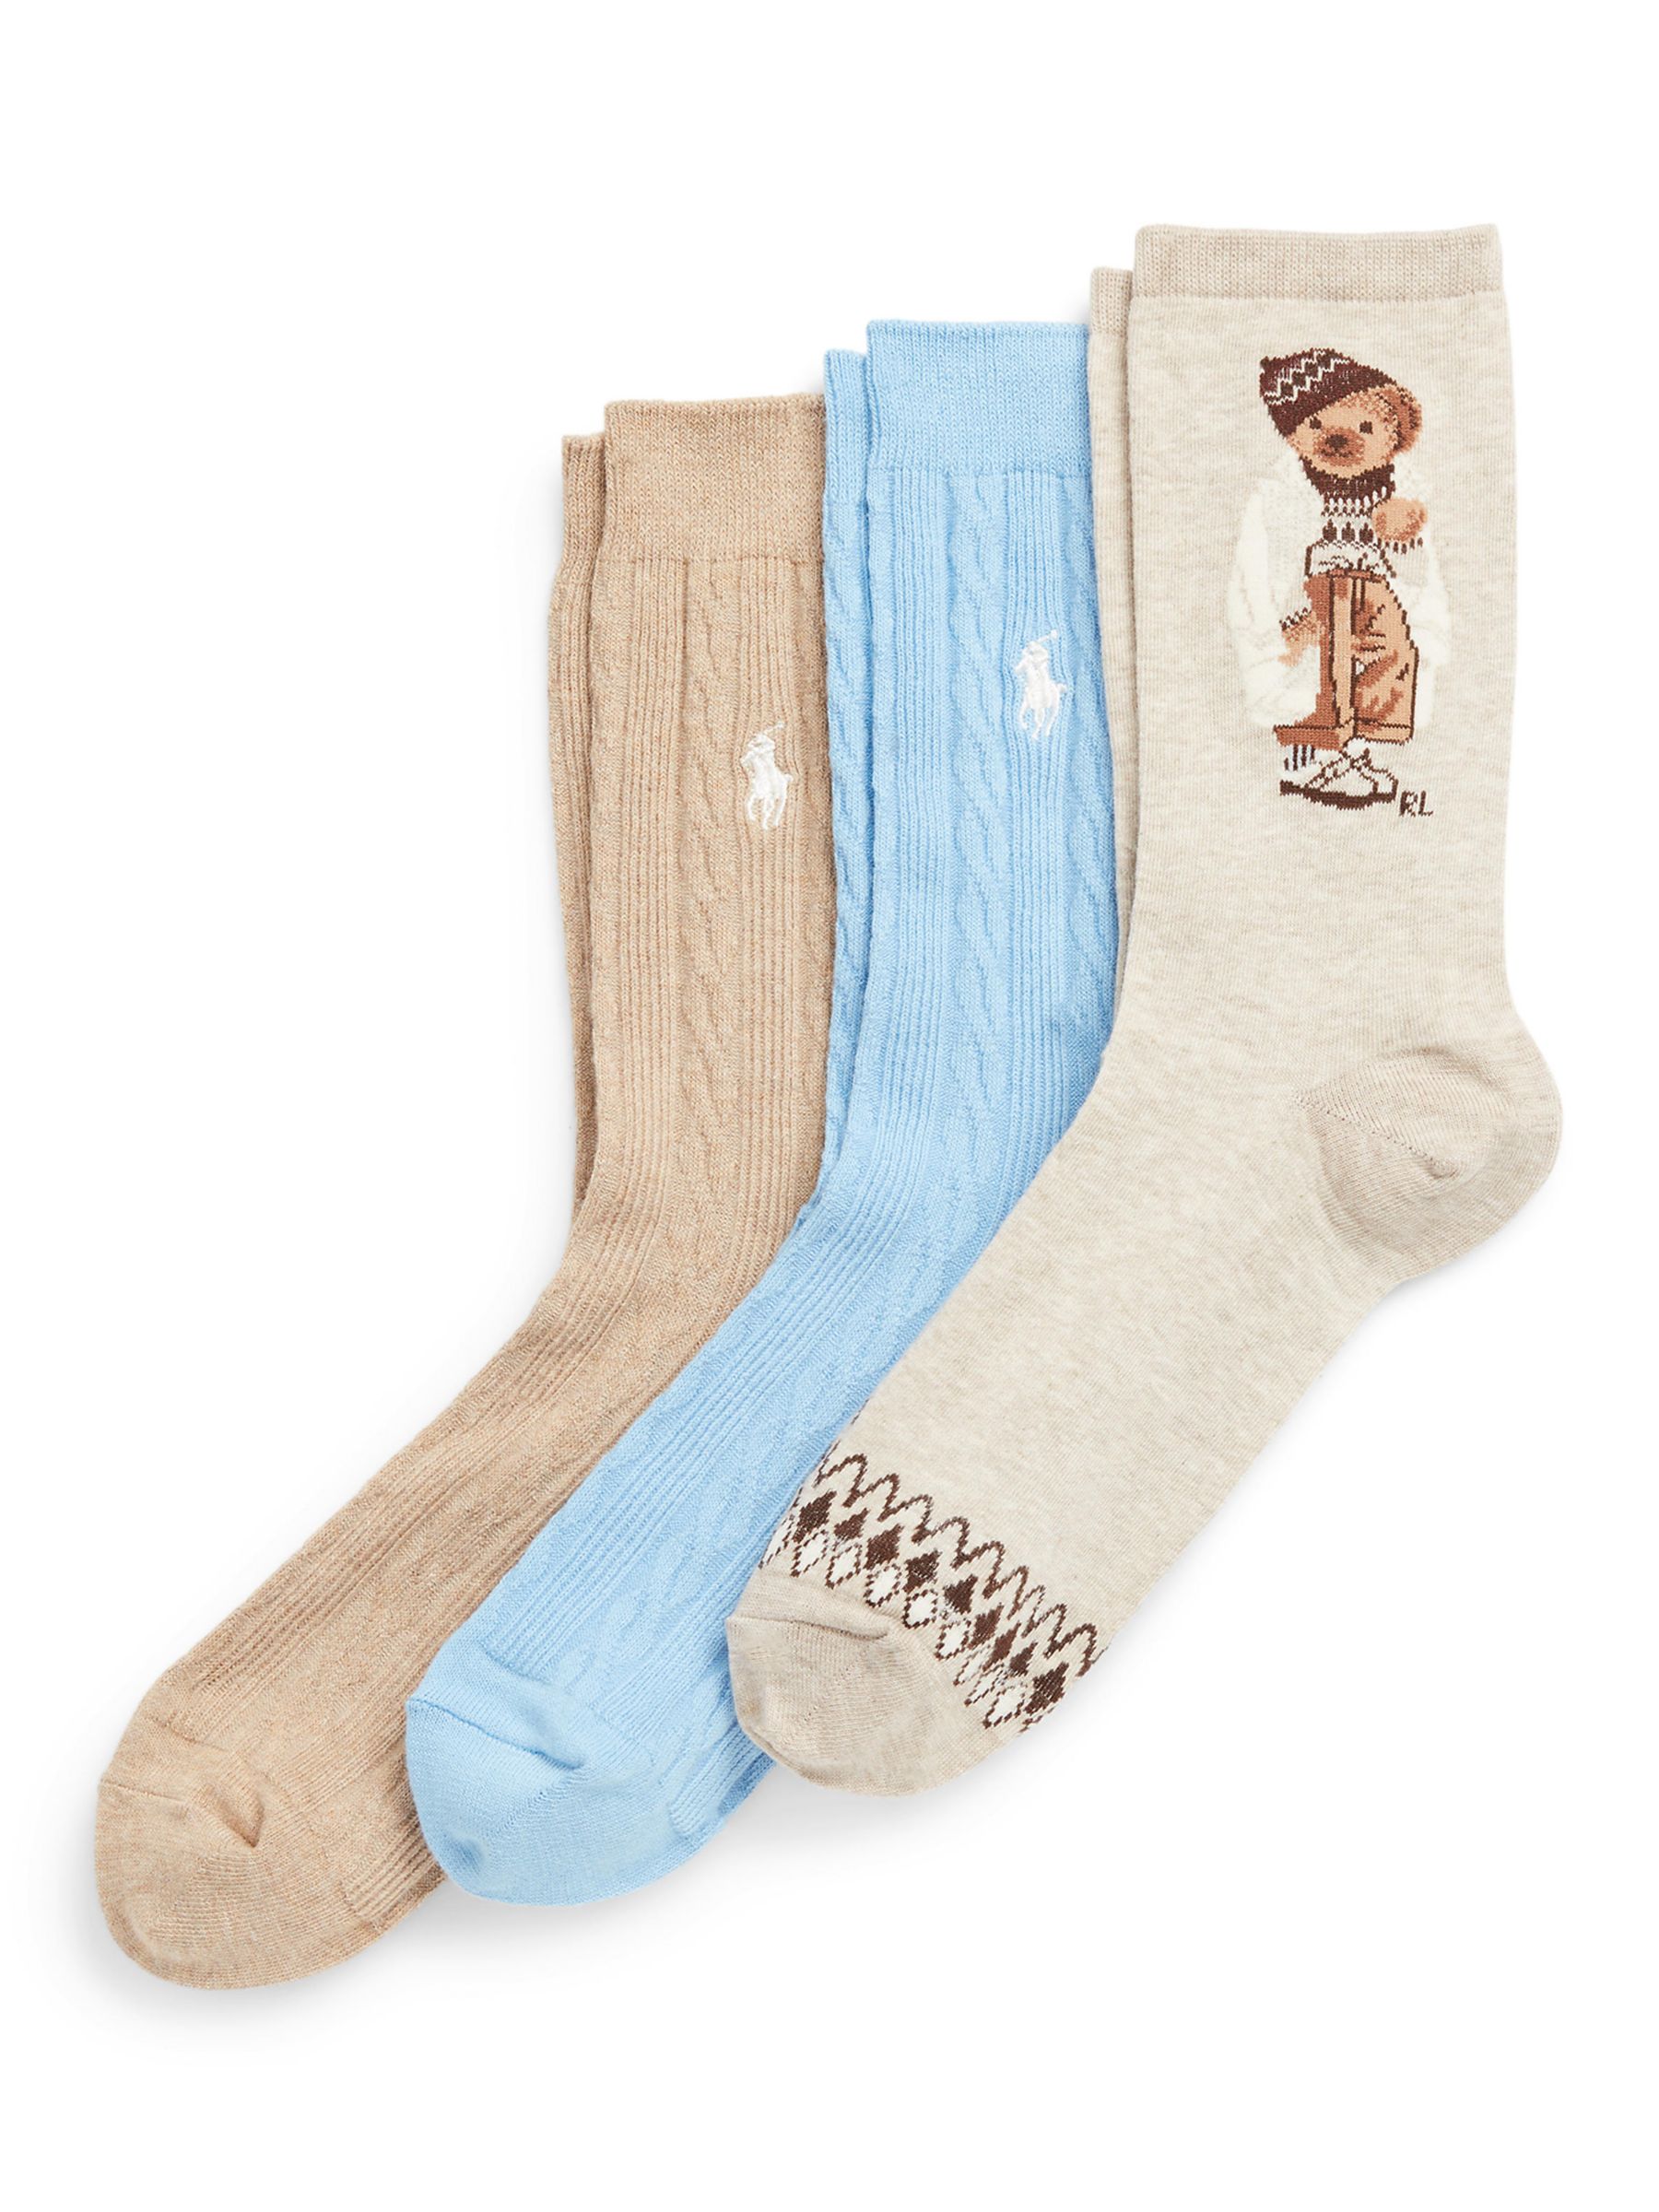 Ralph Lauren Winter Bear Ankle Socks Gift Set, Pack of 3, Multi